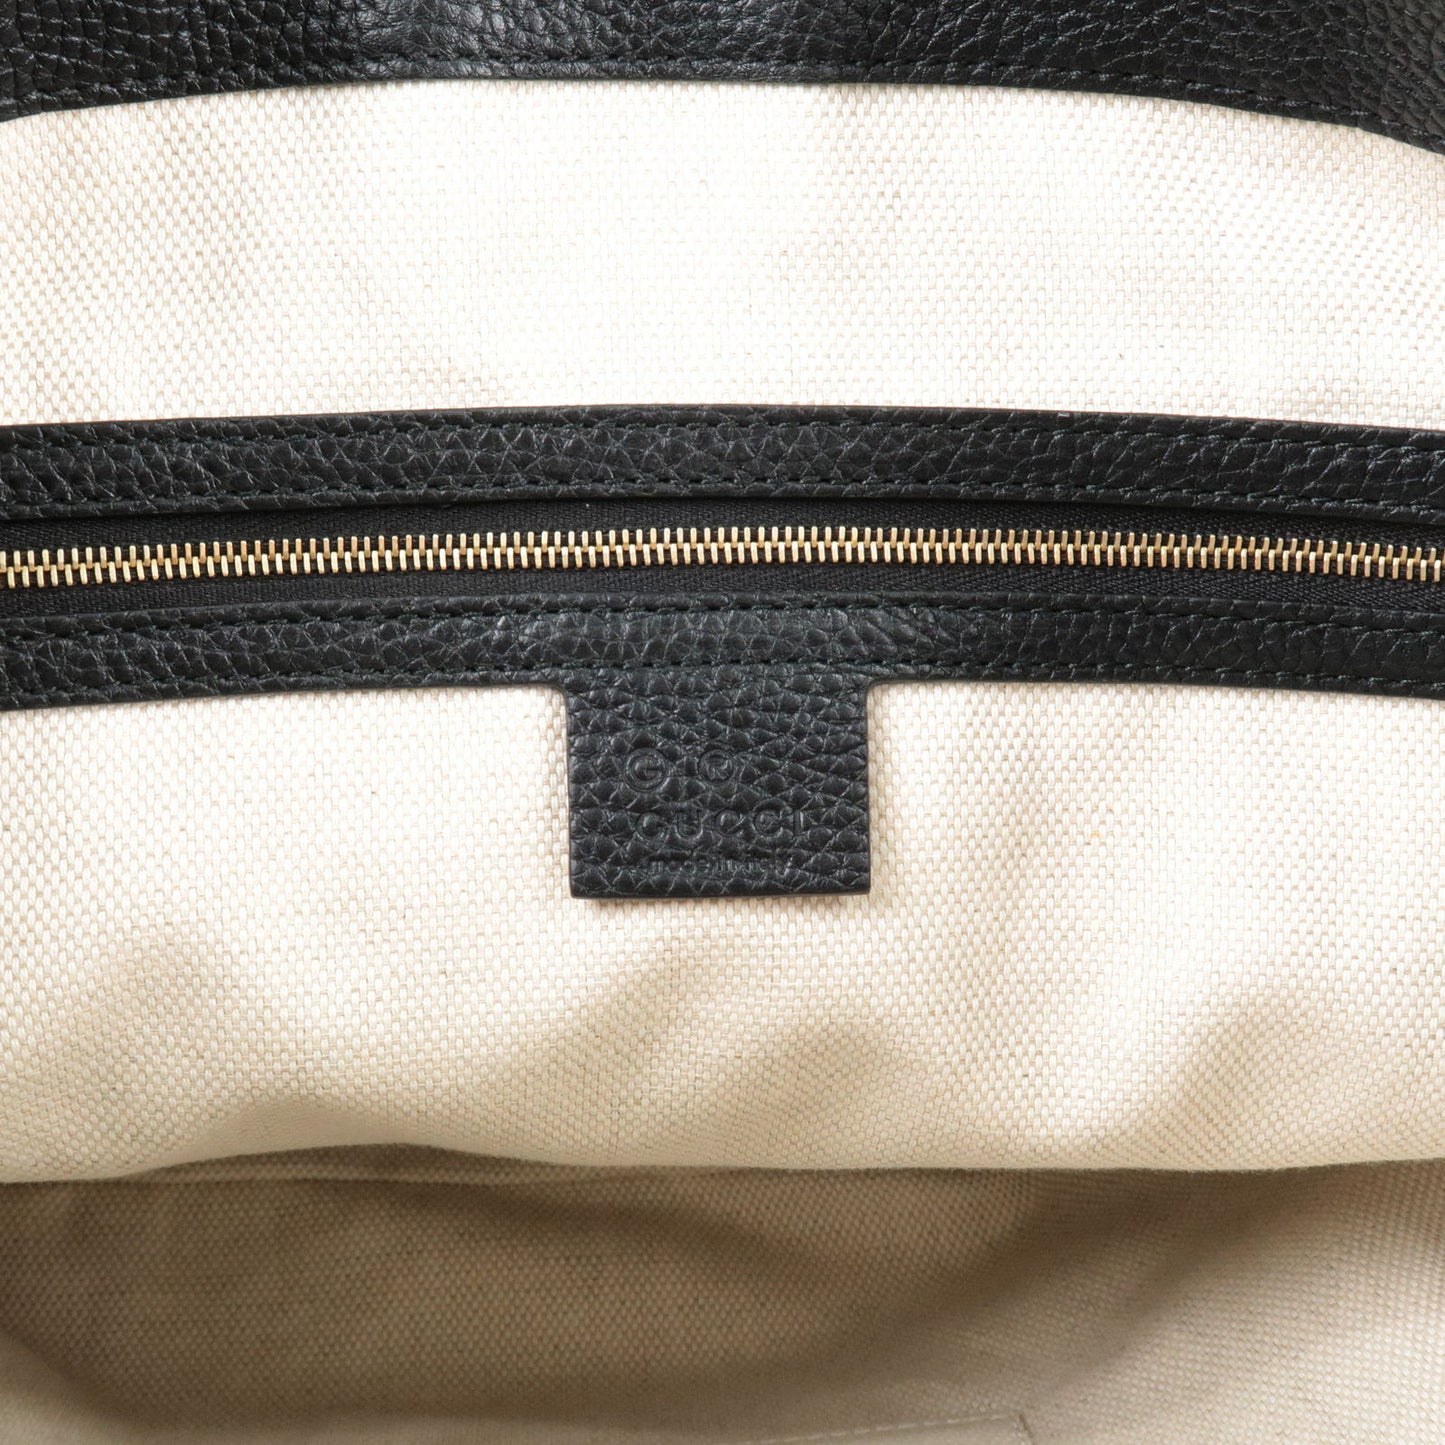 GUCCI SOHO Leather 2Way Shoulder Bag Hand Bag Black 536194